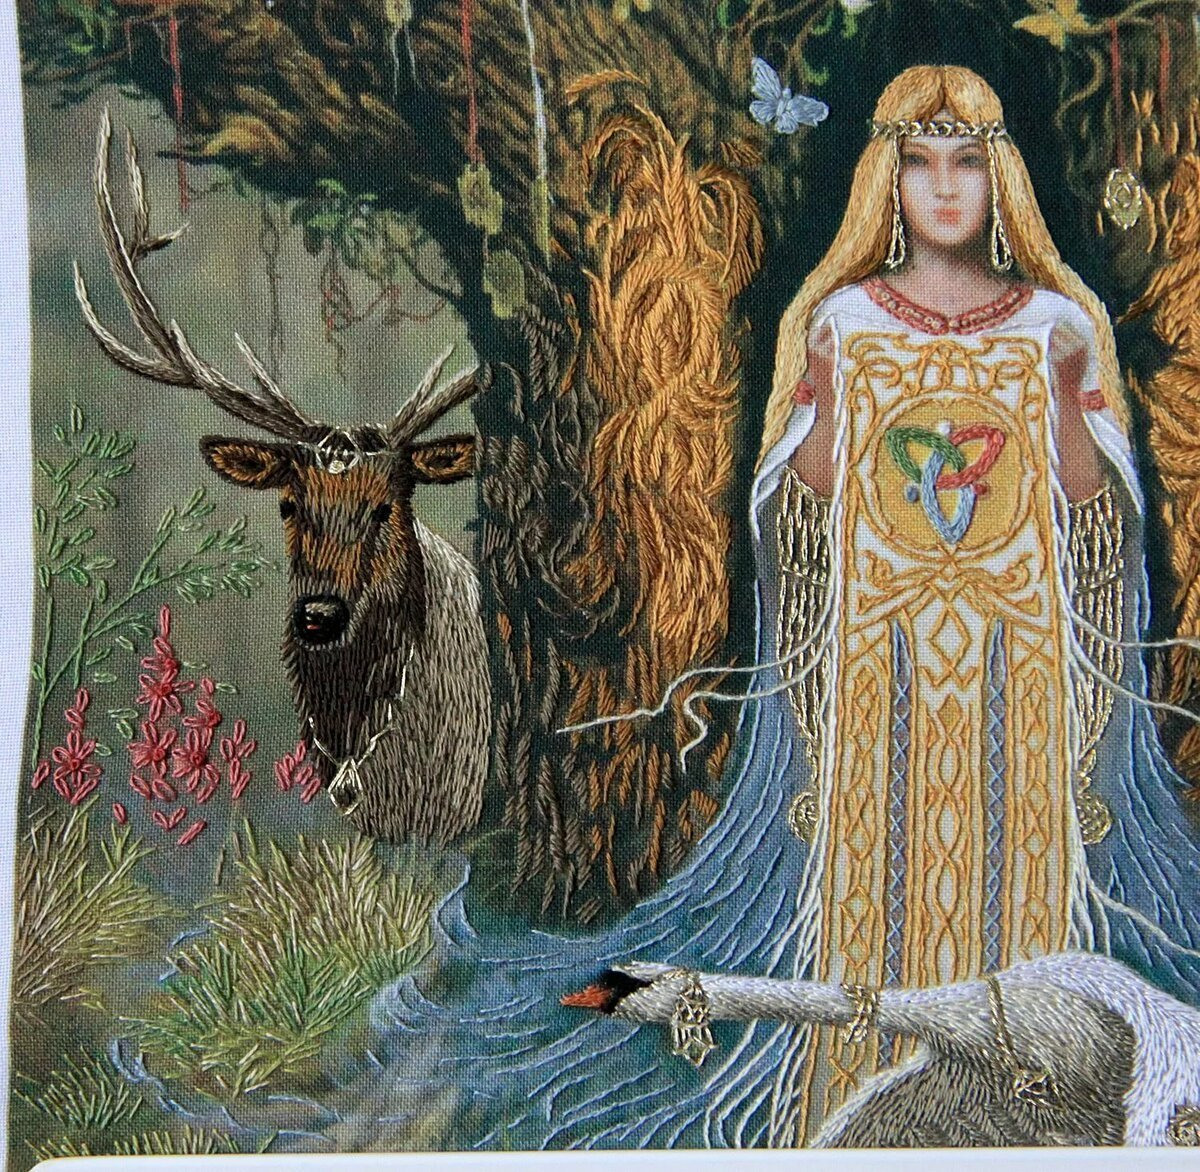 Славянская богиня Ягиня Матушка